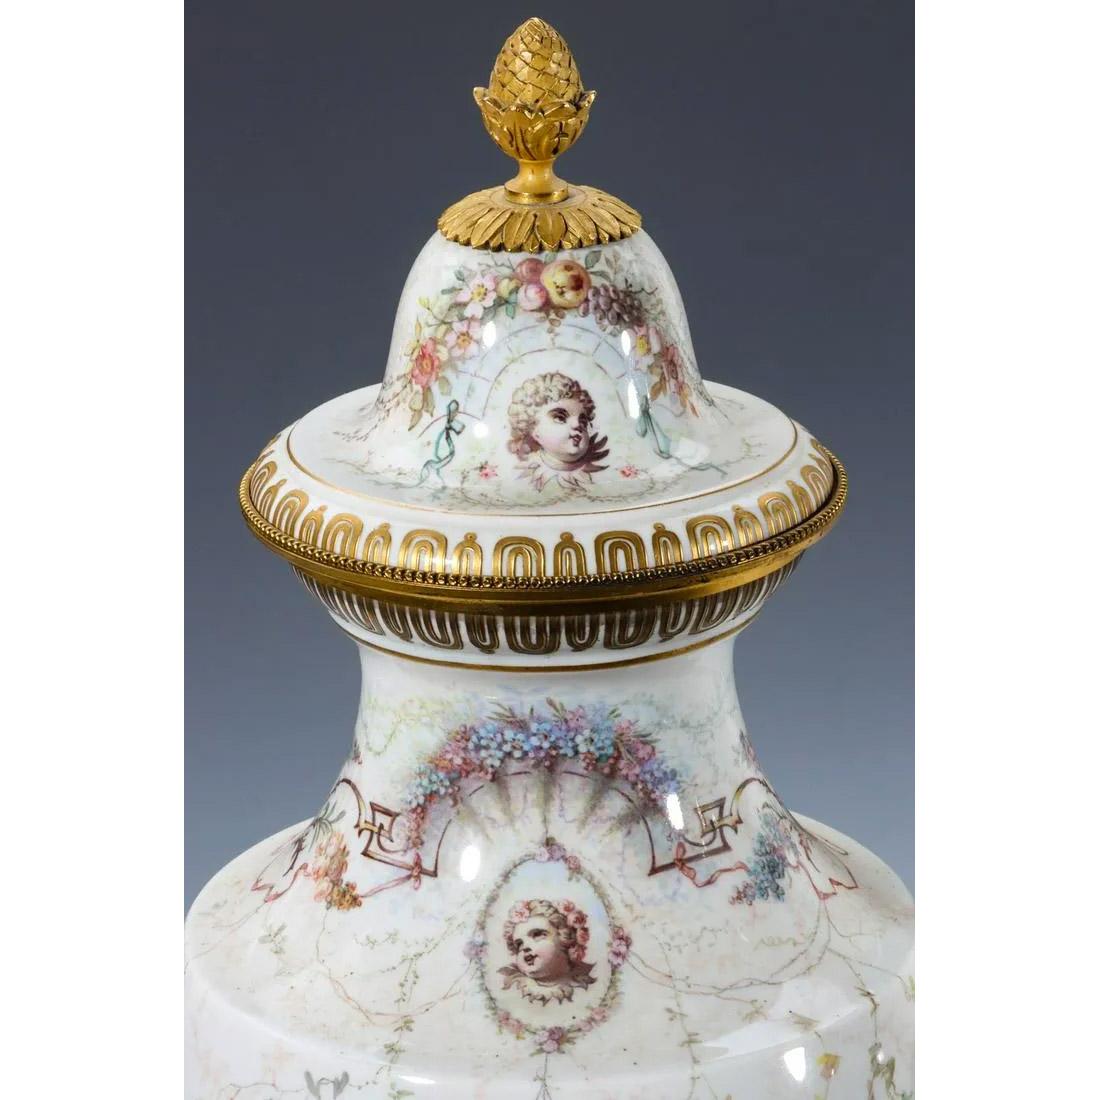 Paire exceptionnelle d'urnes couvertes de style Sèvres du XIXe siècle, finement décorées de scènes continues de vierges classiques et de putti dans des paysages détaillés, chacune signée 